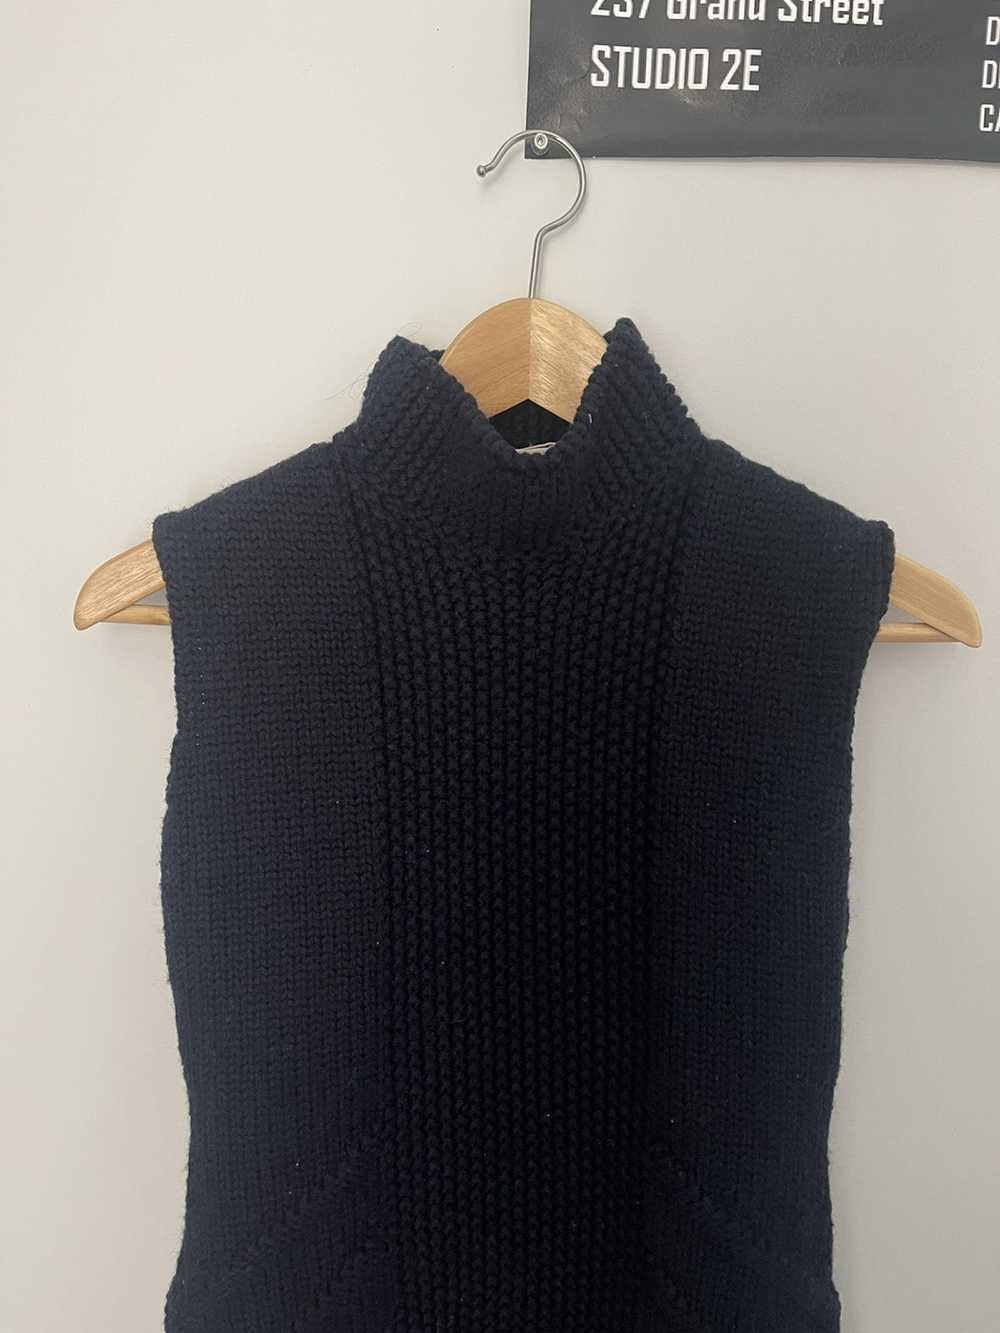 Prada Prada Knitted Sleeveless Sweater Dress - image 2